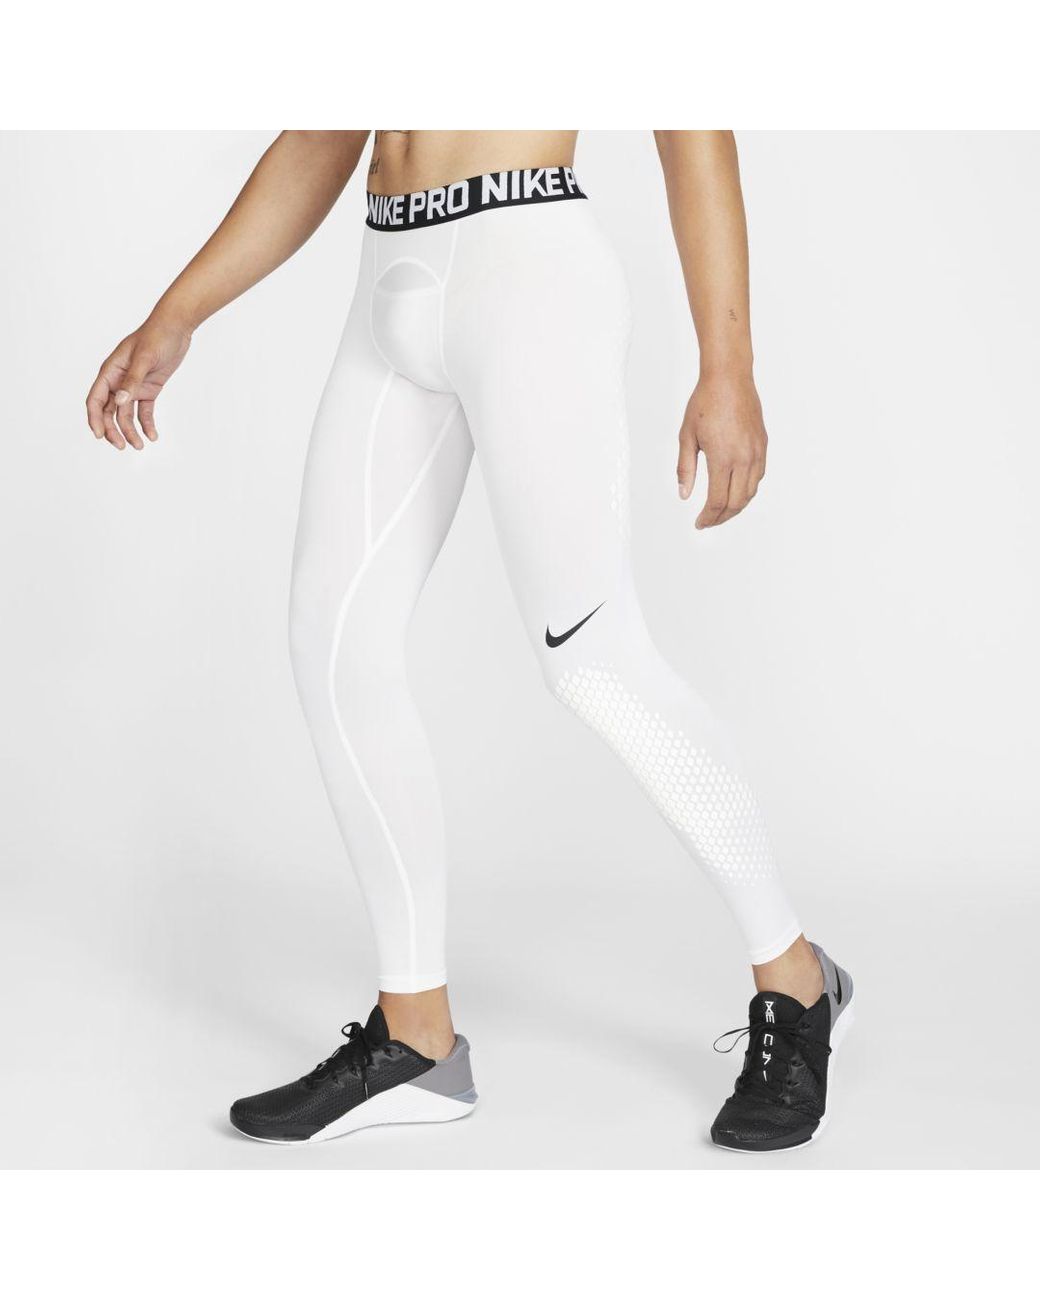 Nike Pro Slider Baseball Tights in White for Men - Lyst